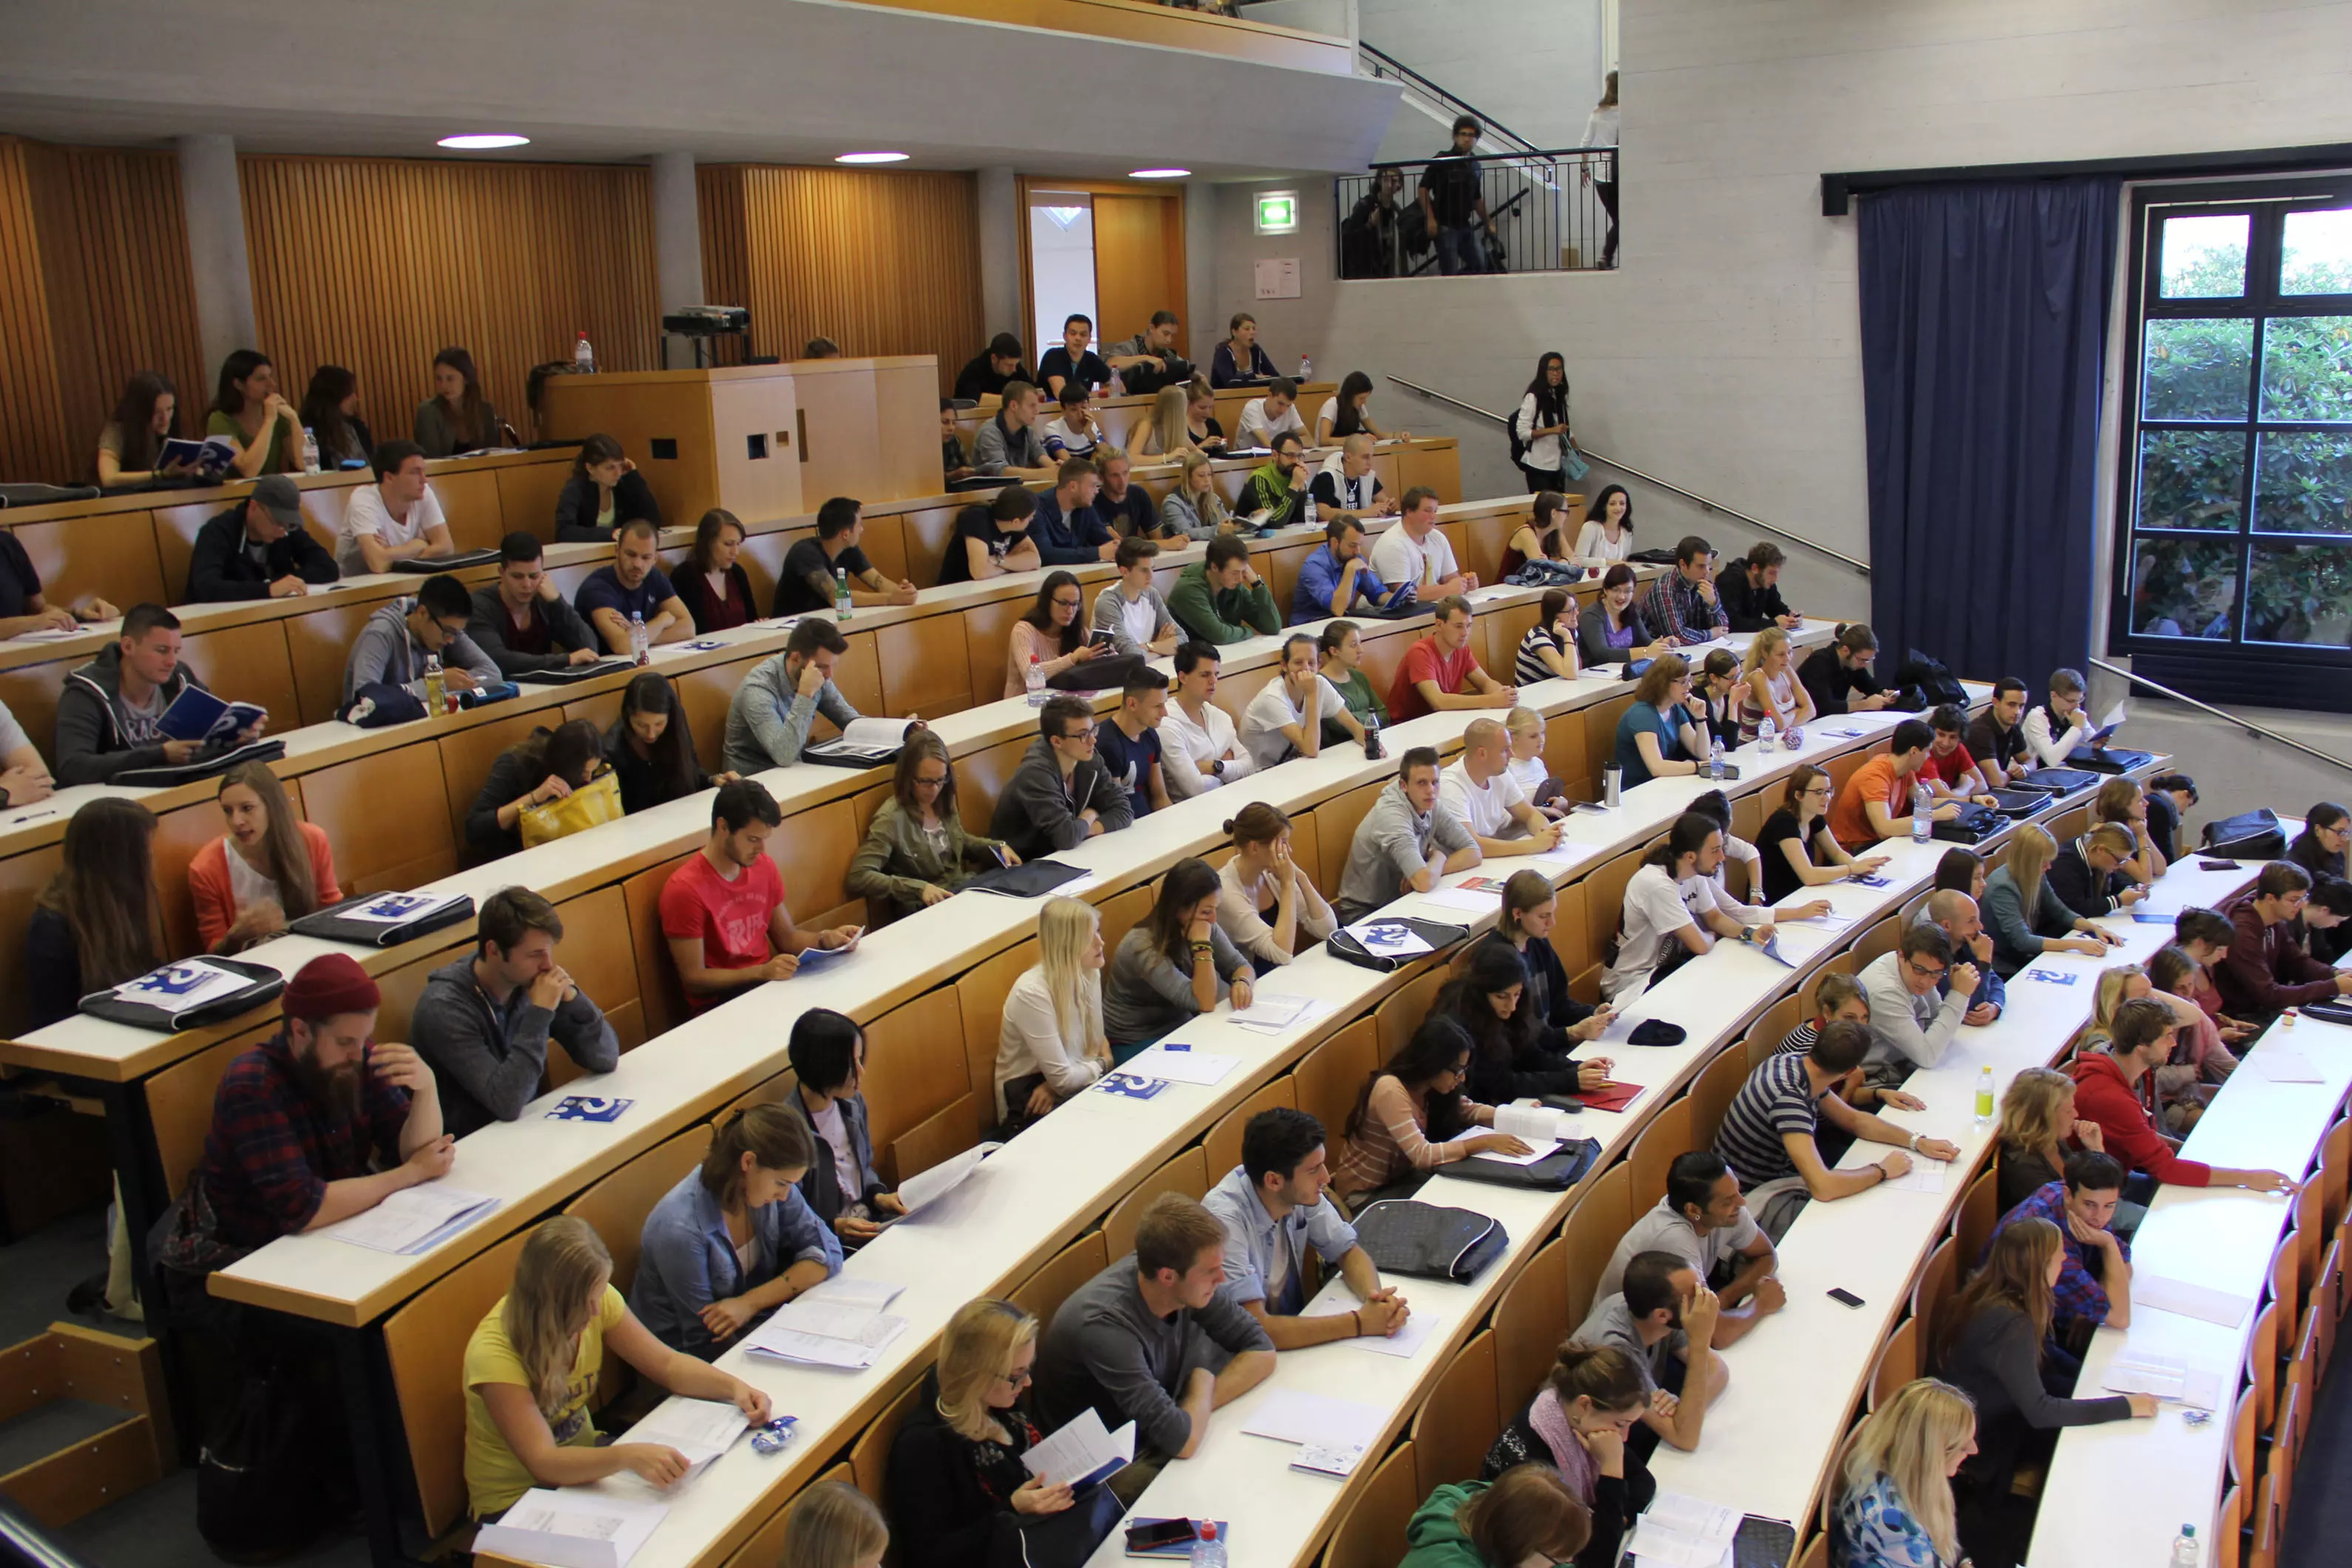 ZHAW in Wädenswil begrüsst über 400 neue Bachelorstudierende